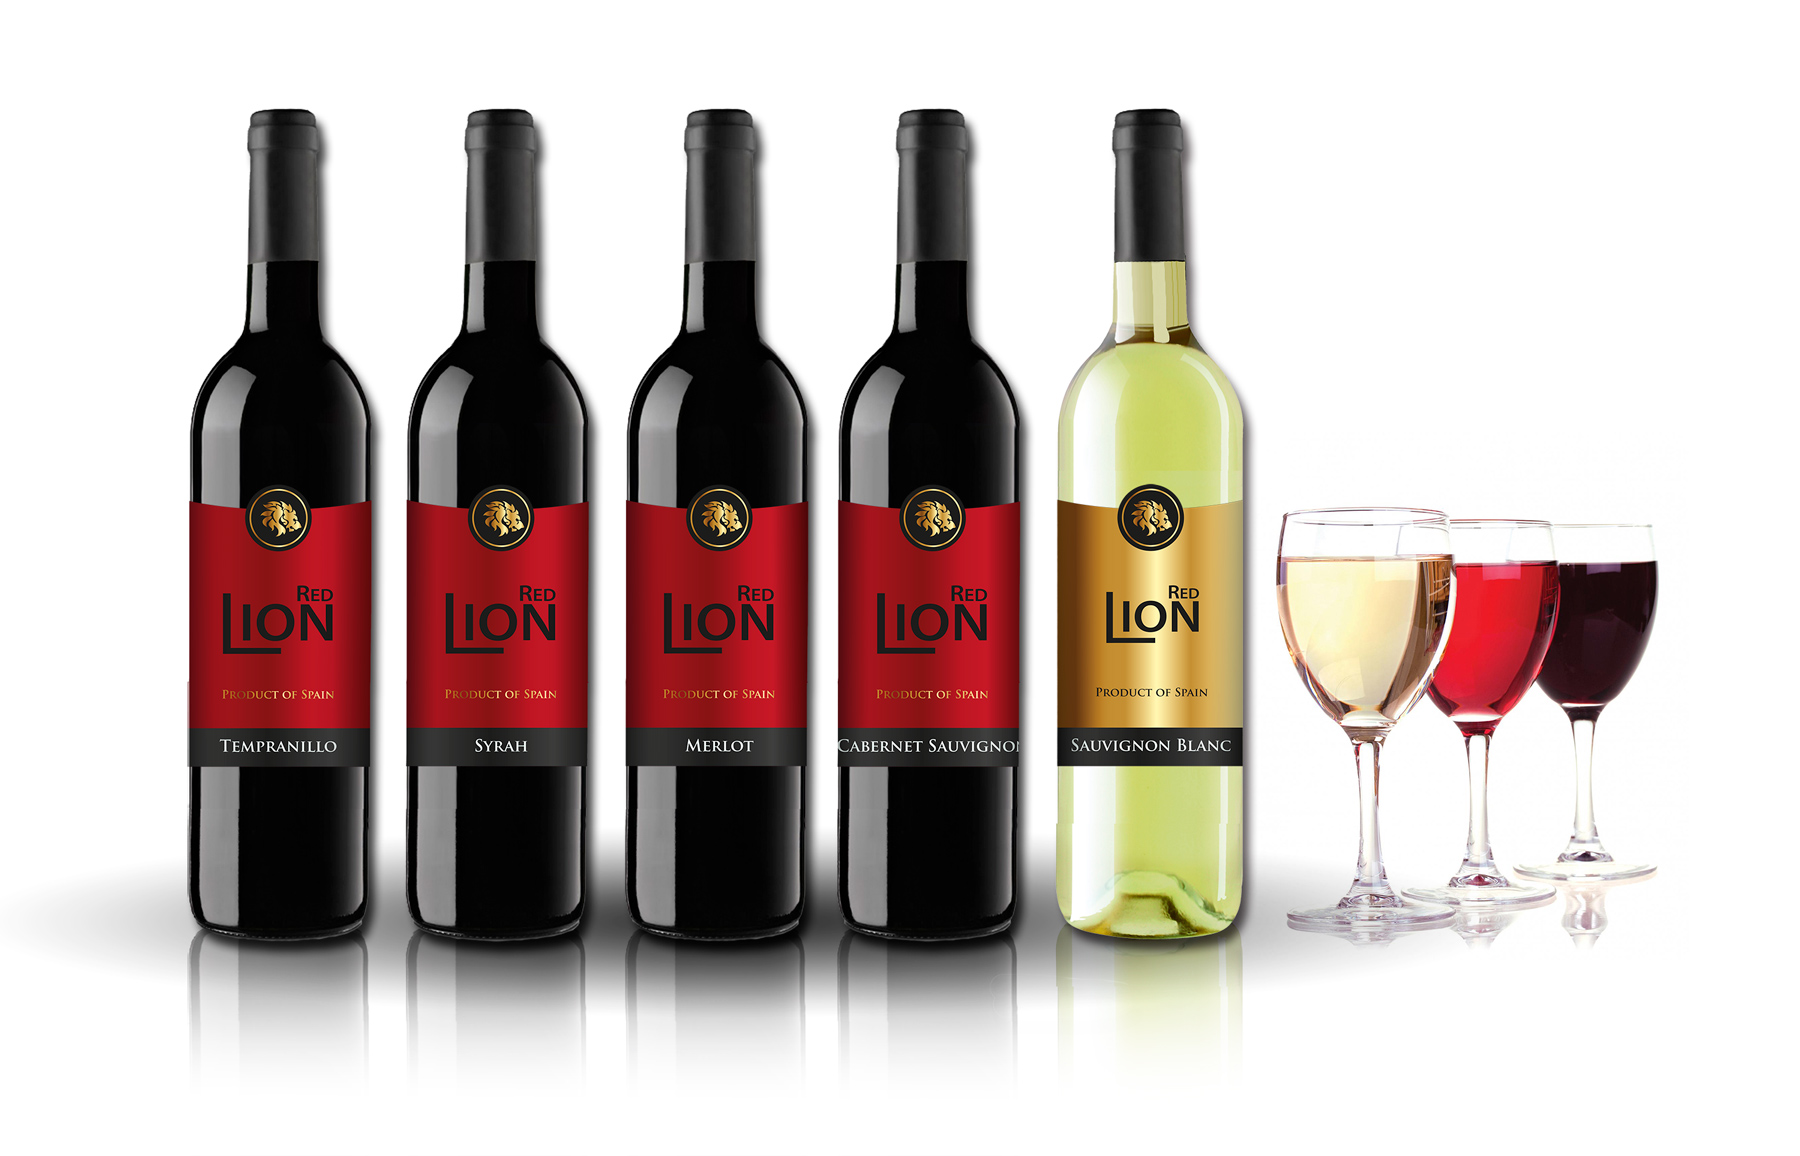 Diseño de logo y marca para etiquetas de vino para exportación de vinos españoles al mercado chino